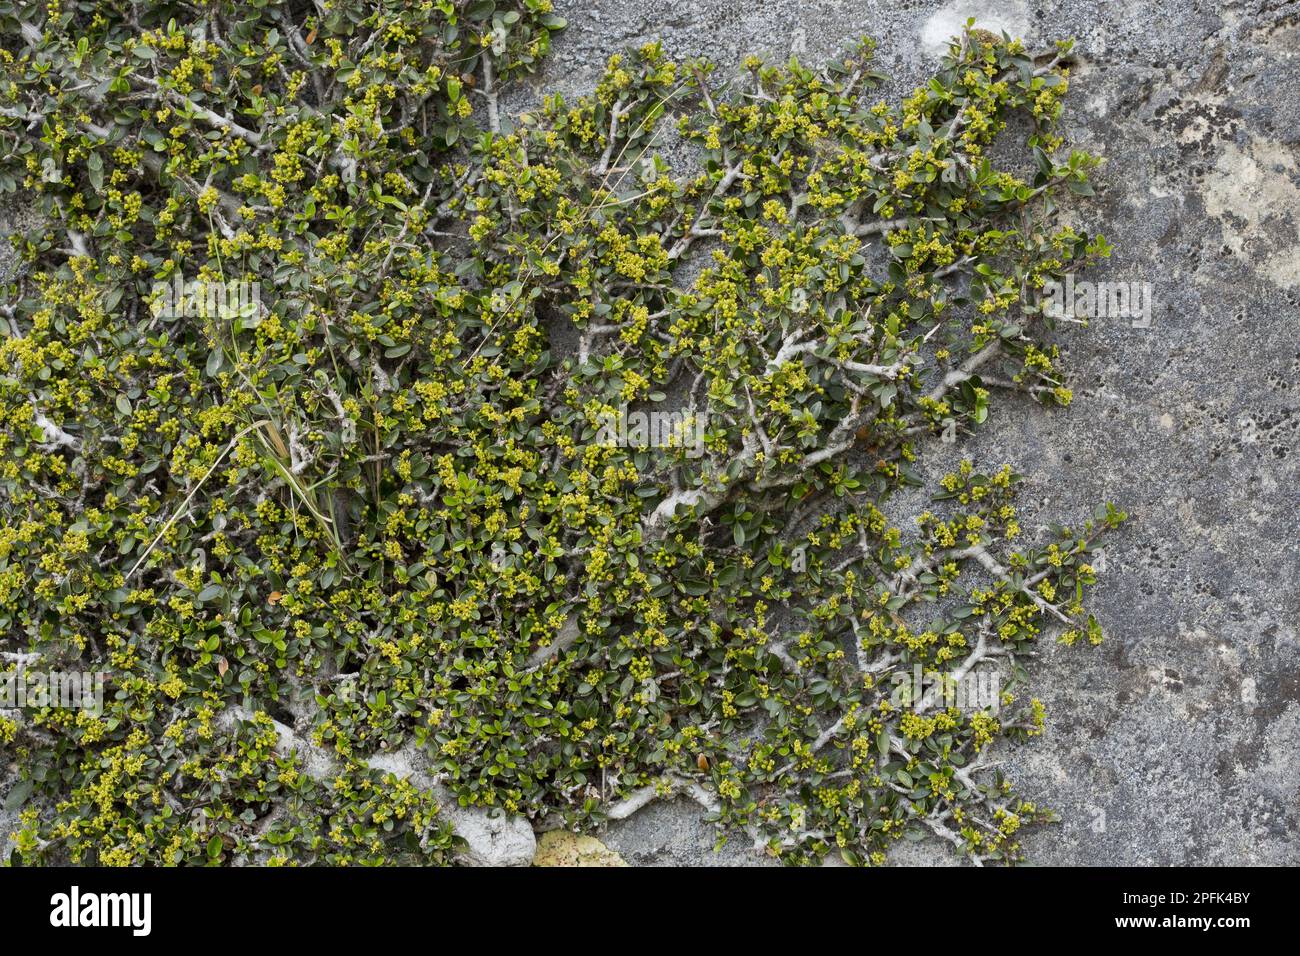 Fiori di spina di mare del Mediterraneo (Rhamnus alaternus myrtifolius), che crescono sulla scogliera, Sierra de las Nieves, provincia di Malaga, Andalusia, Spagna Foto Stock